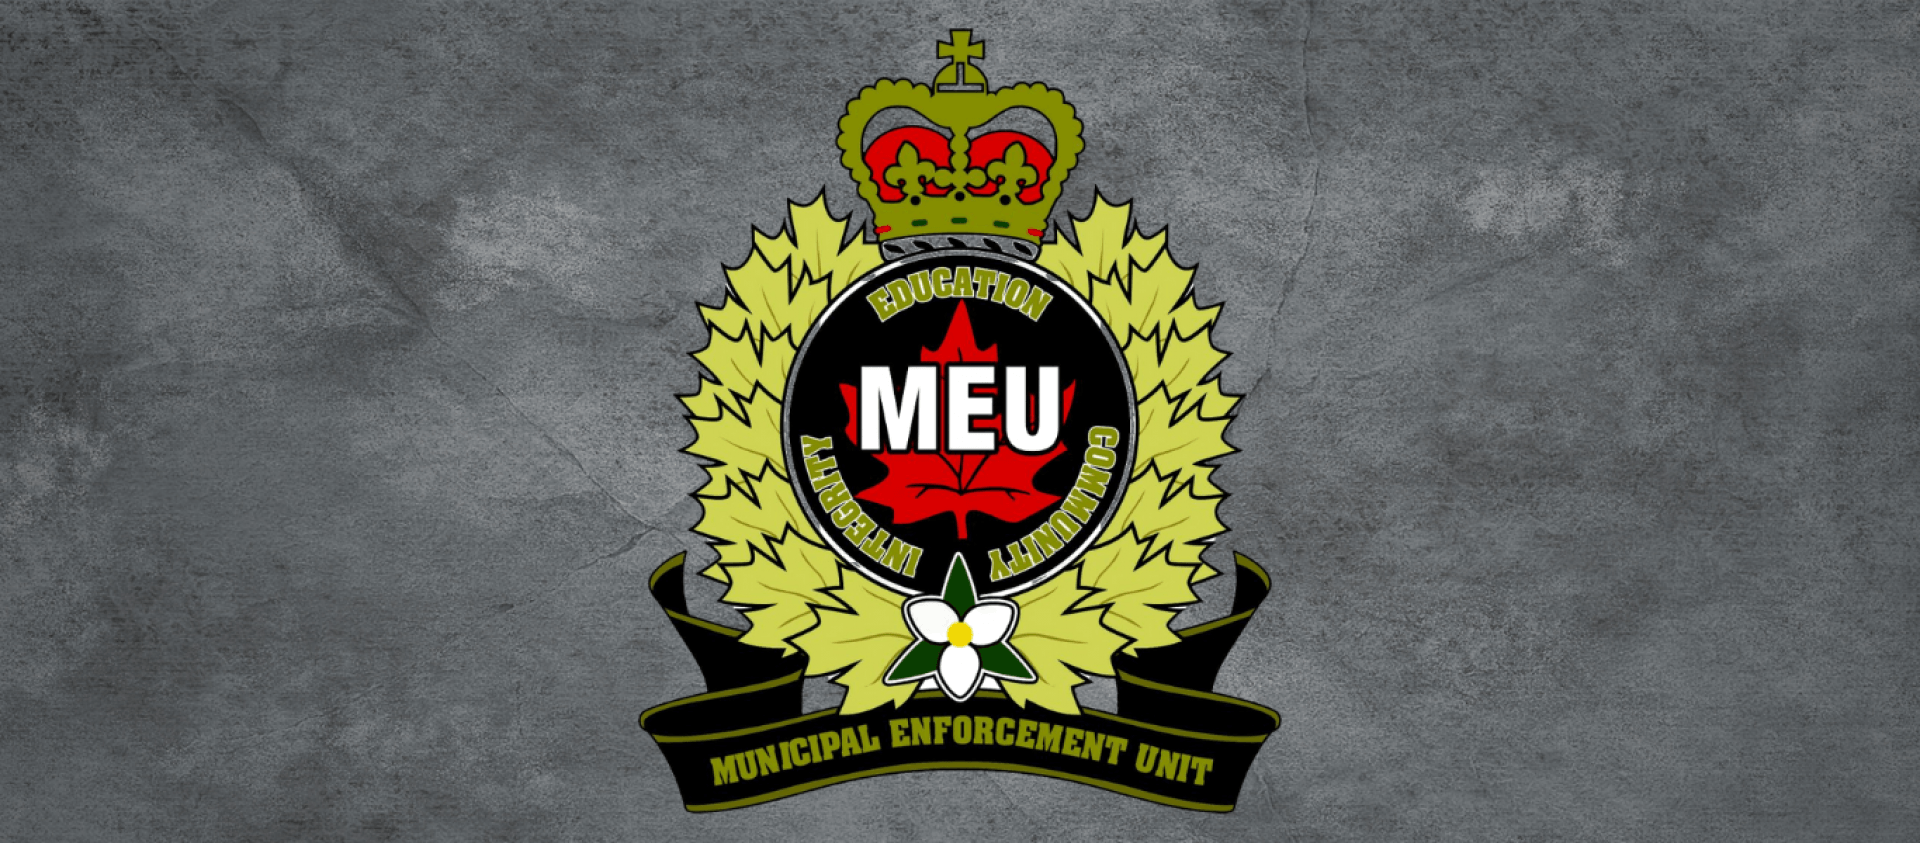 municipal enforcement unit logo